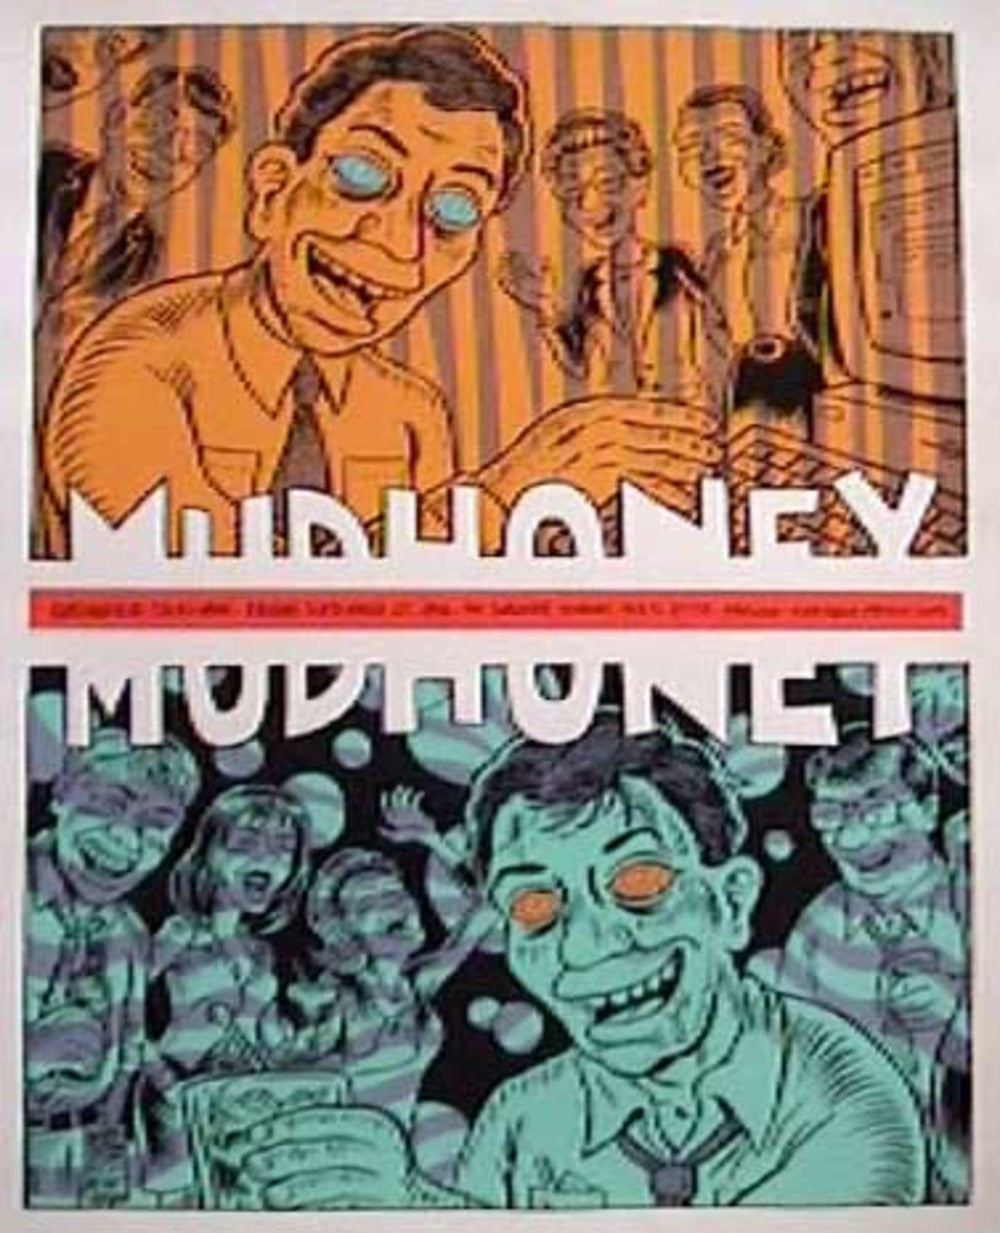 Ward Sutton - 1996 - Mudhoney Concert Poster